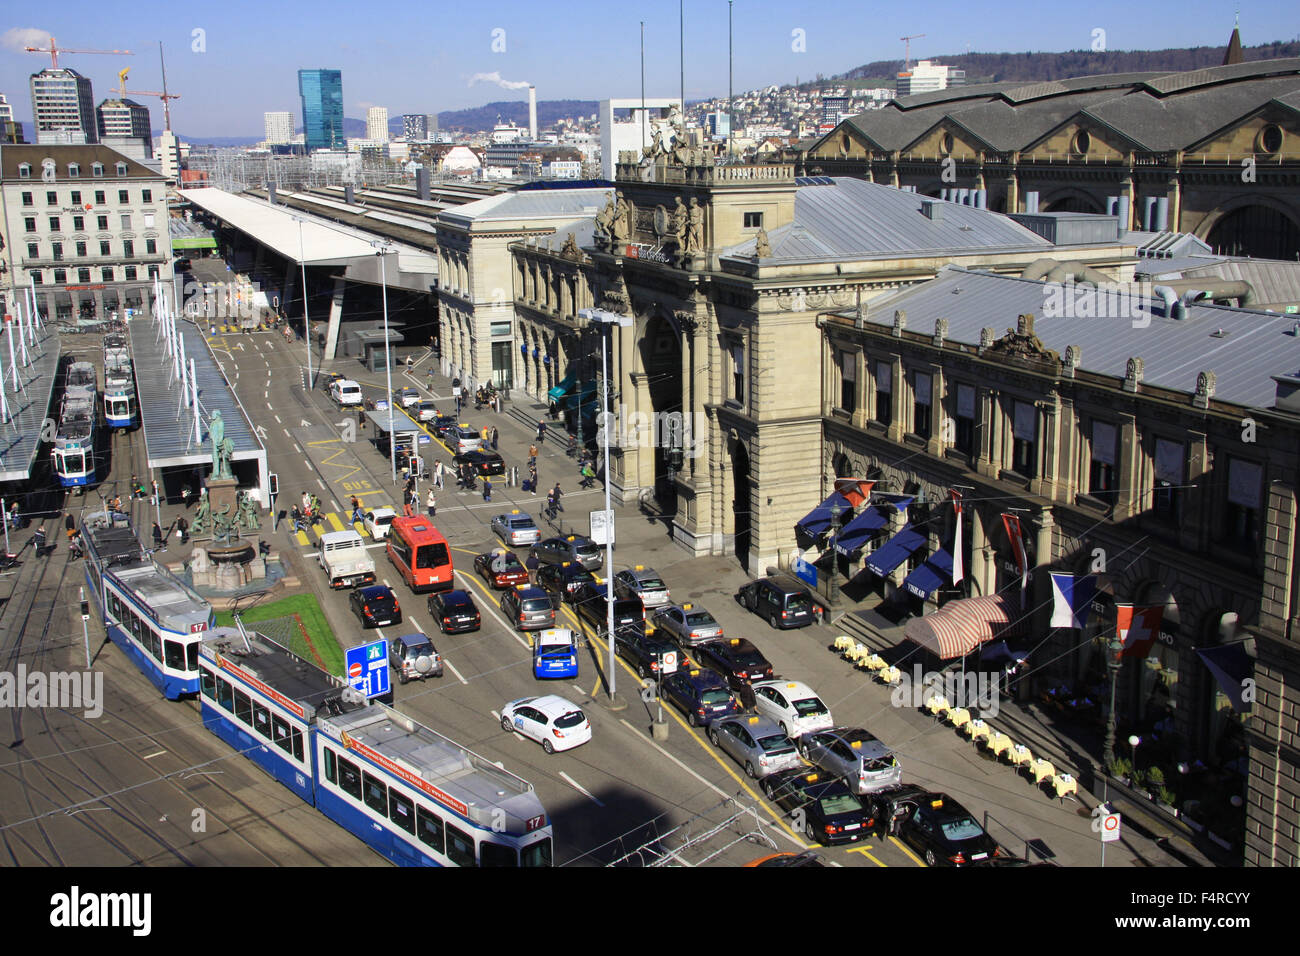 Zurich, Switzerland, Europe, Bahnhofplatz, central station, railway station, Escher, Alfred Escher, statue, tram, streetcar, tra Stock Photo